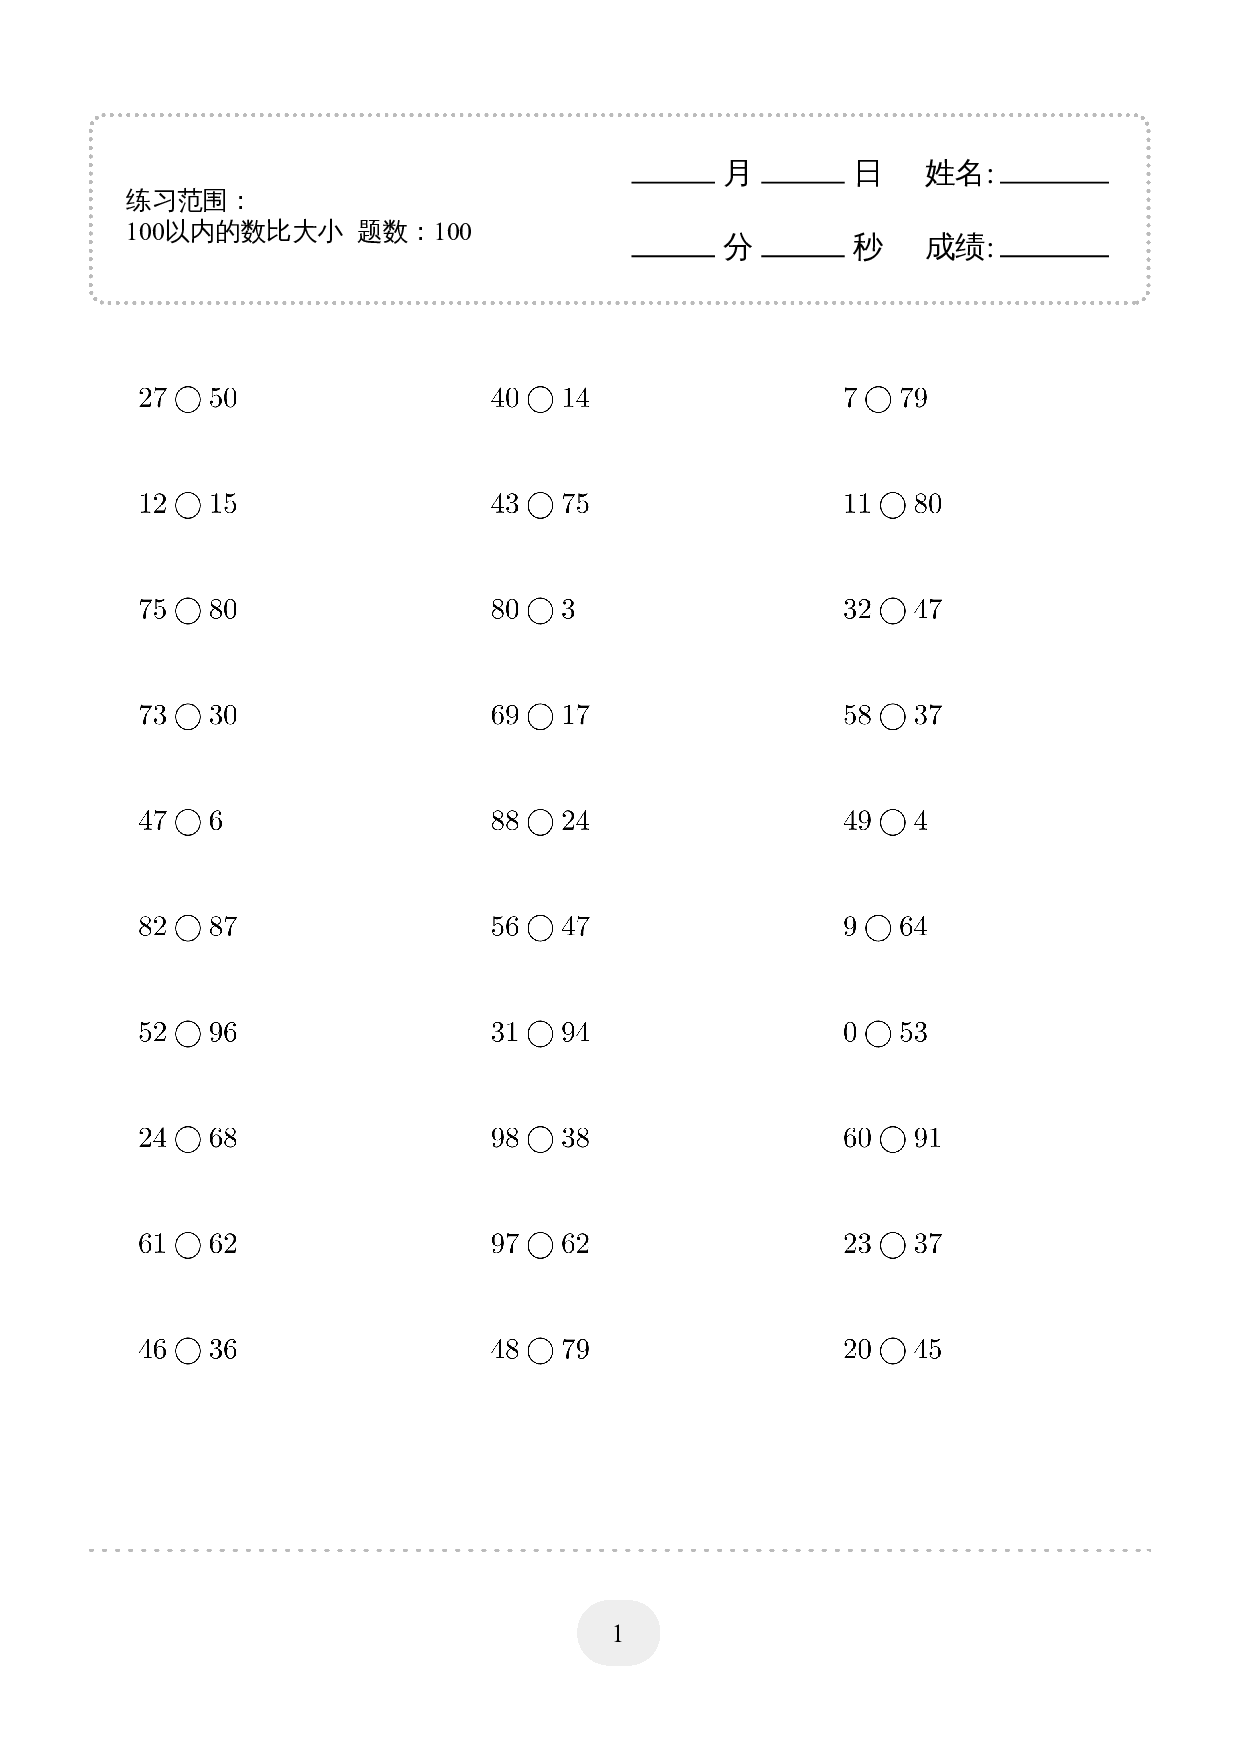 1年级下册数学计算题(100以内的数比大小) 1000题